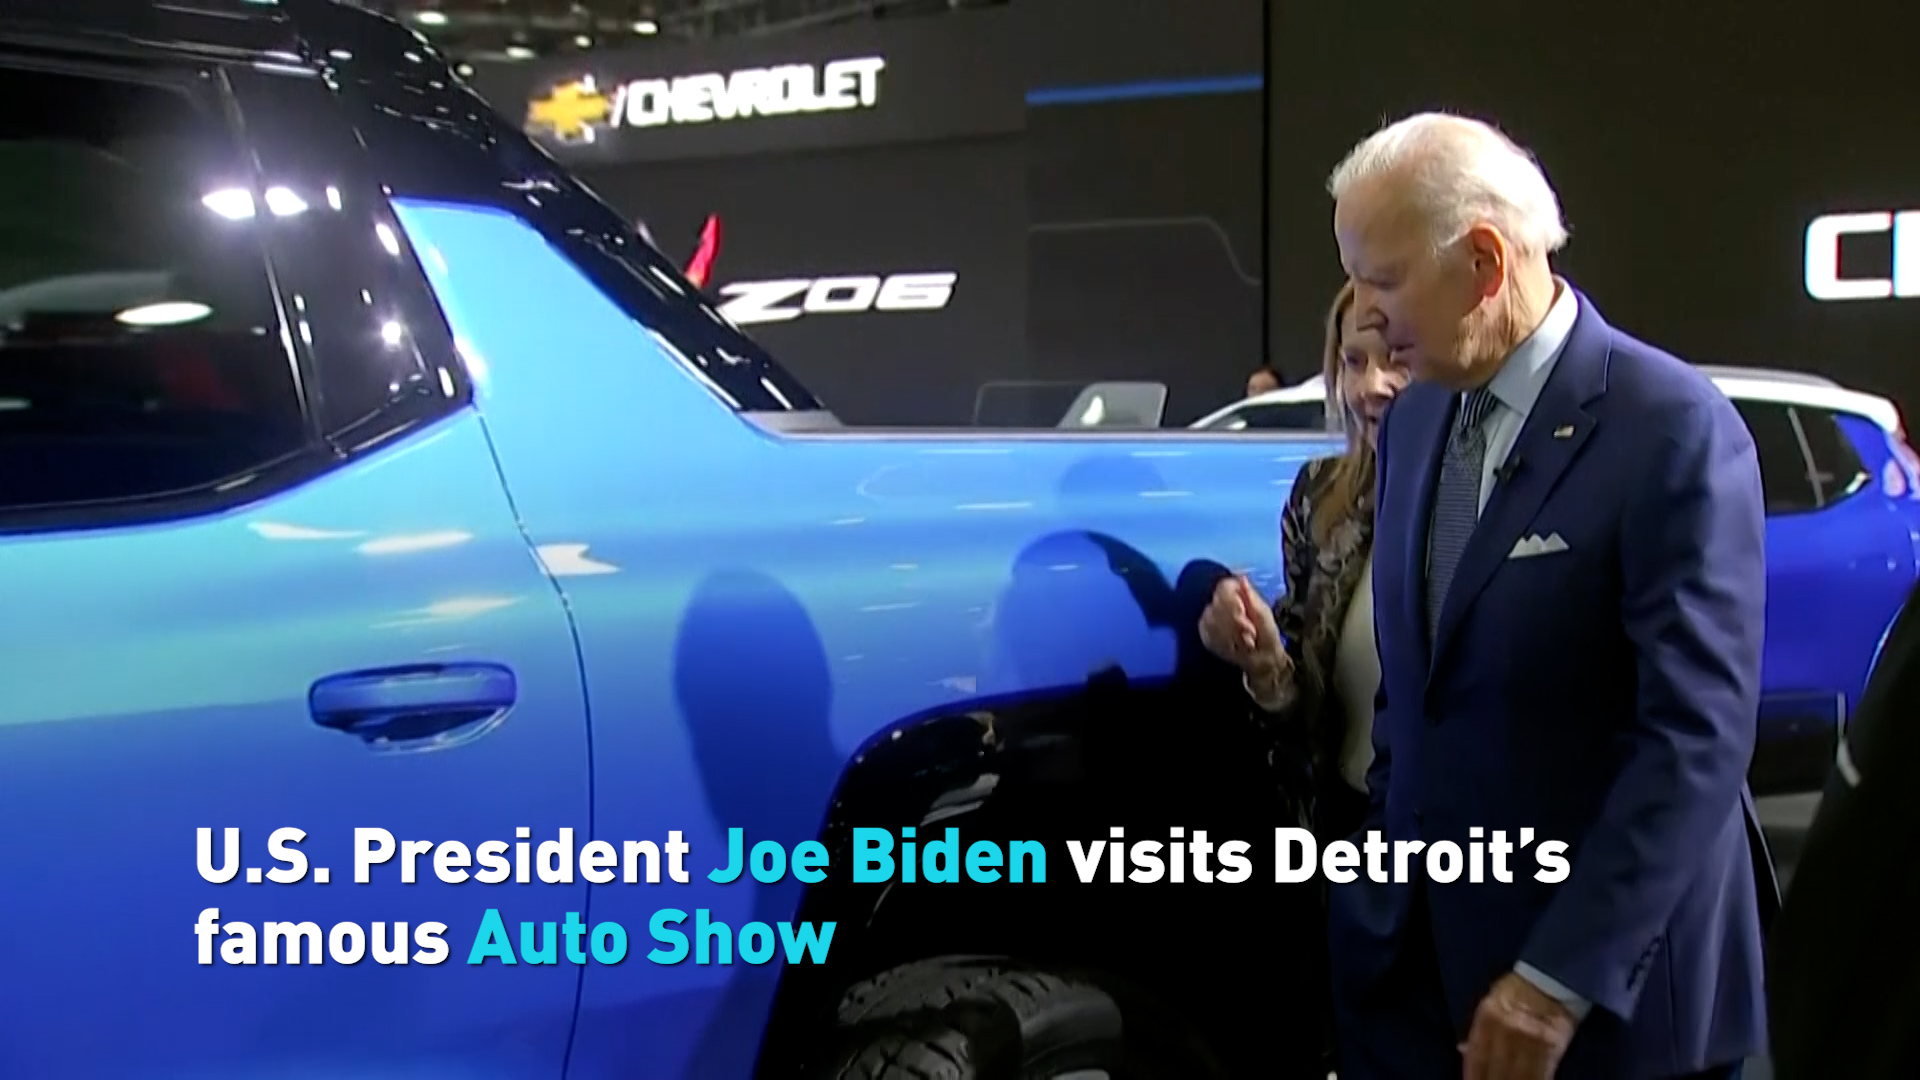 President Joe Biden tours the 2022 NAIAS